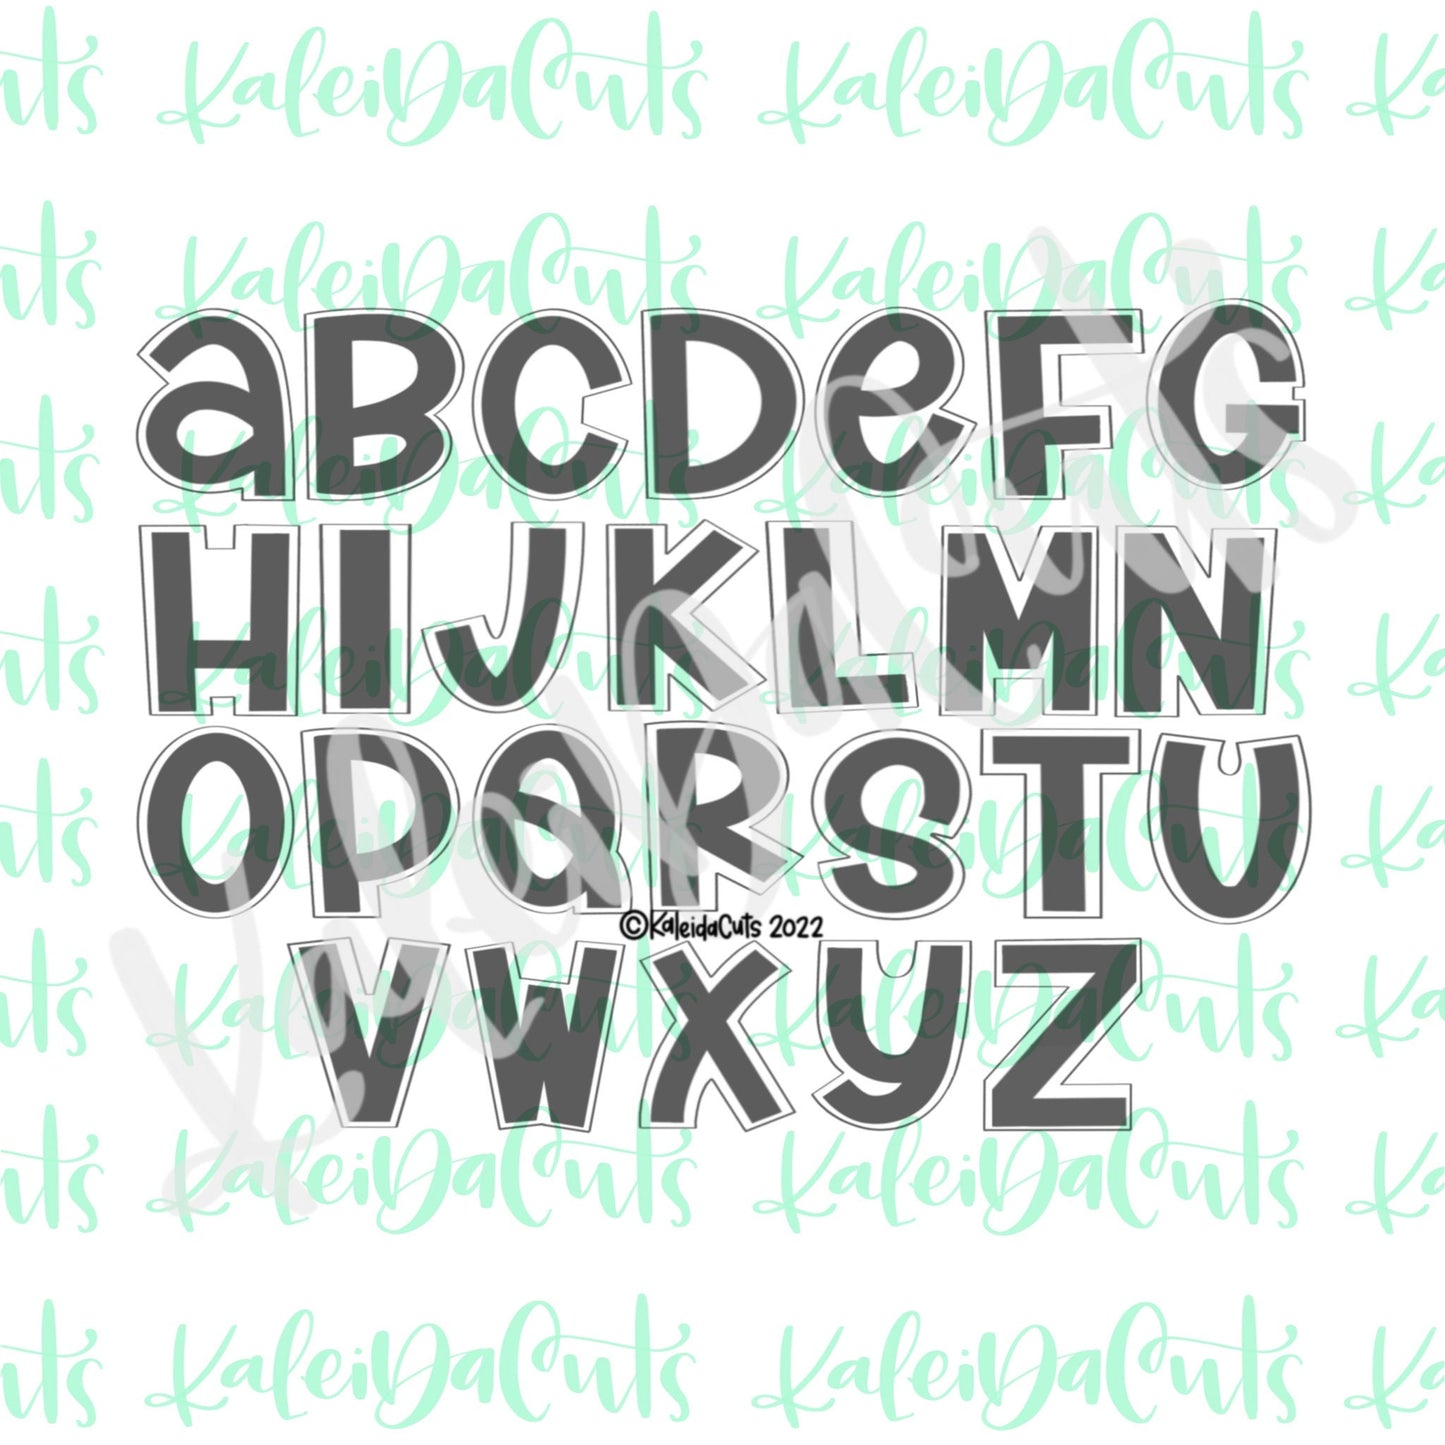 2.5" (Little) Handwritten Alphabet Individual Cookie Cutter